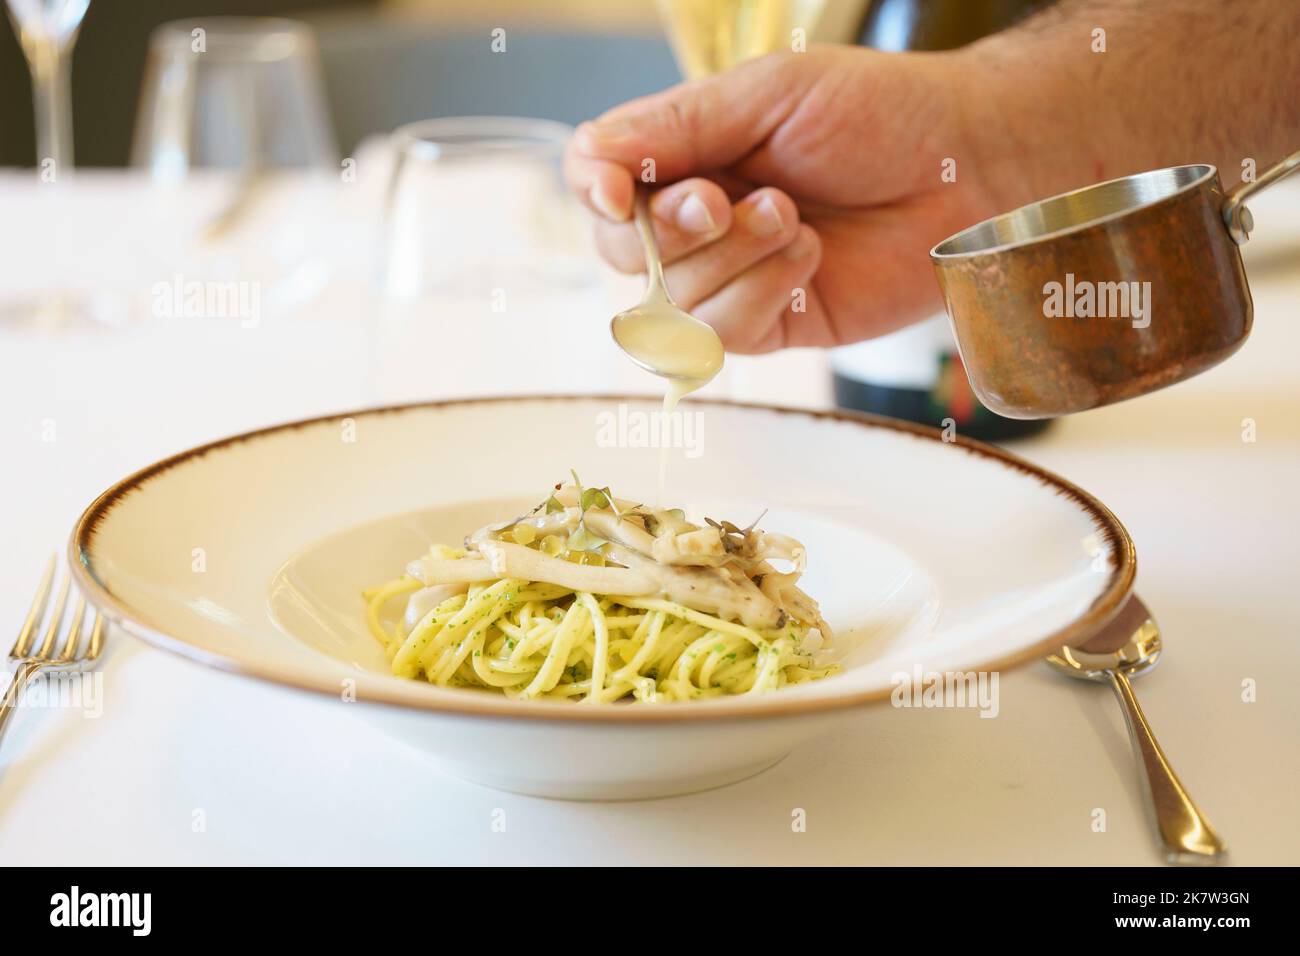 Persona che versa la salsa sul piatto di pasta servito su piatto bianco Foto Stock